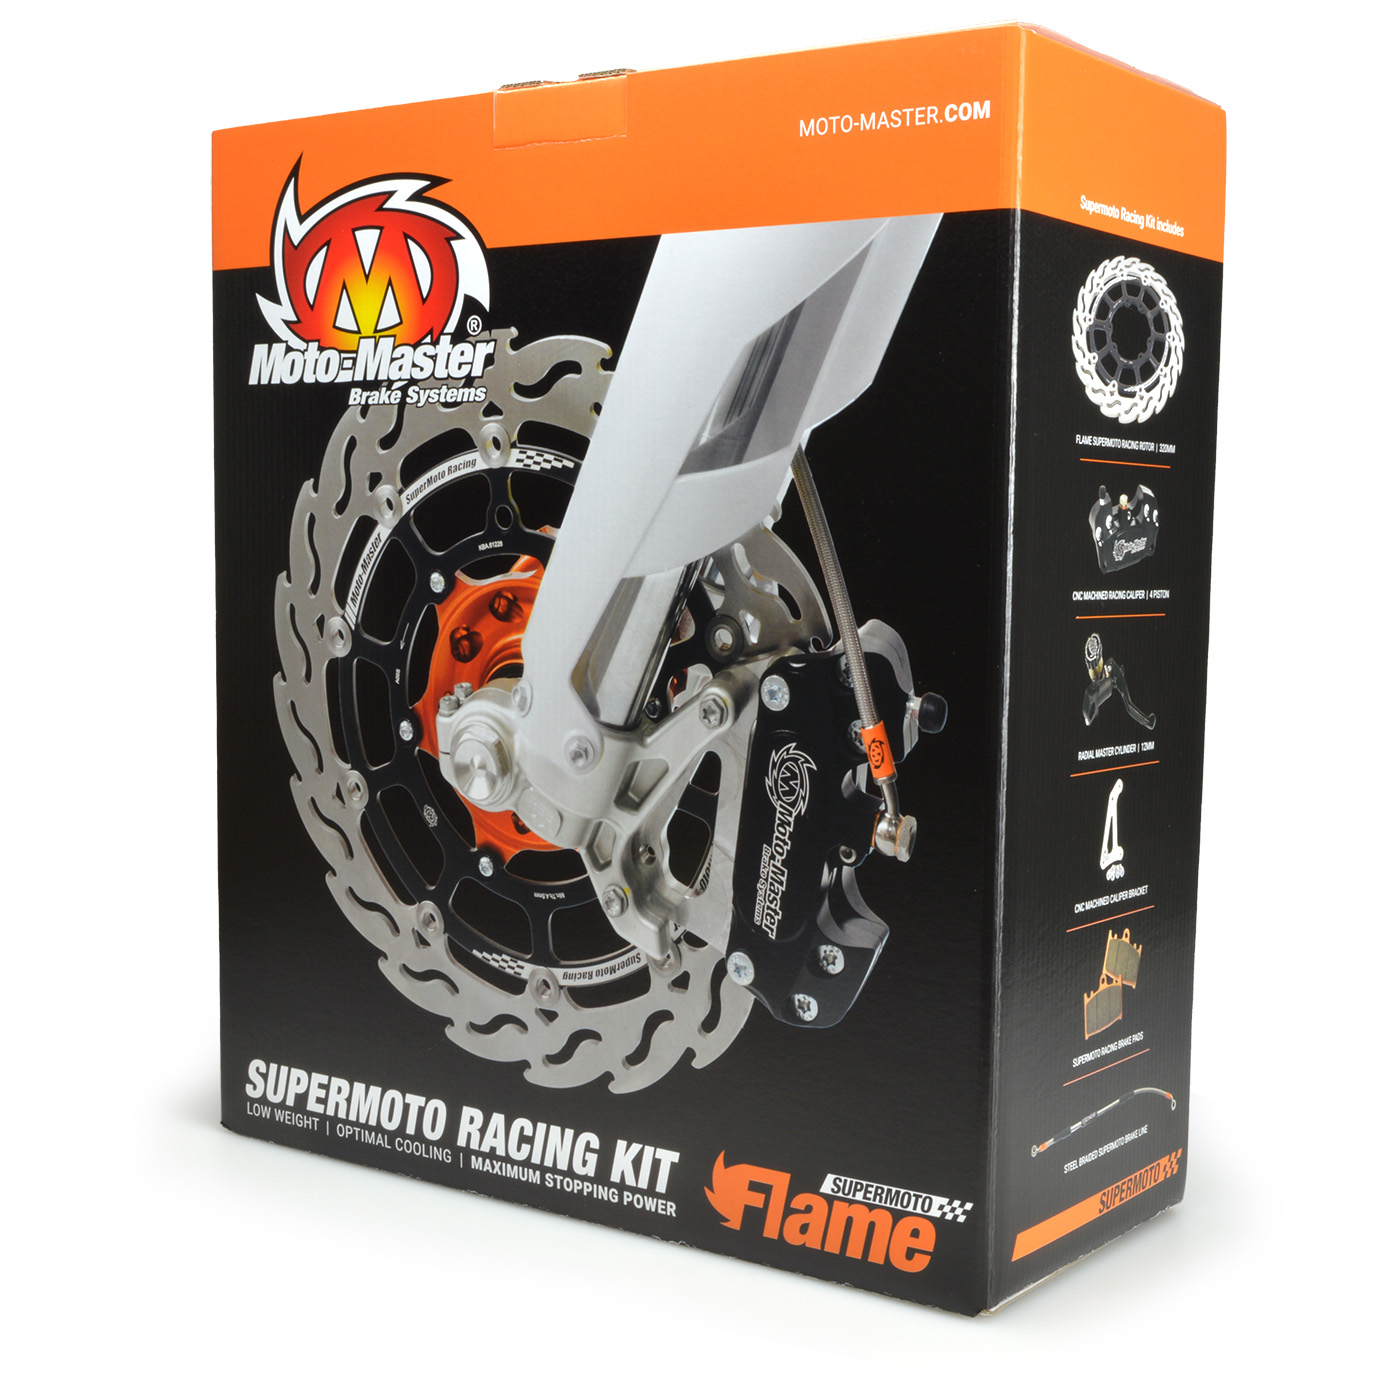 Flame Supermoto Racing Kit